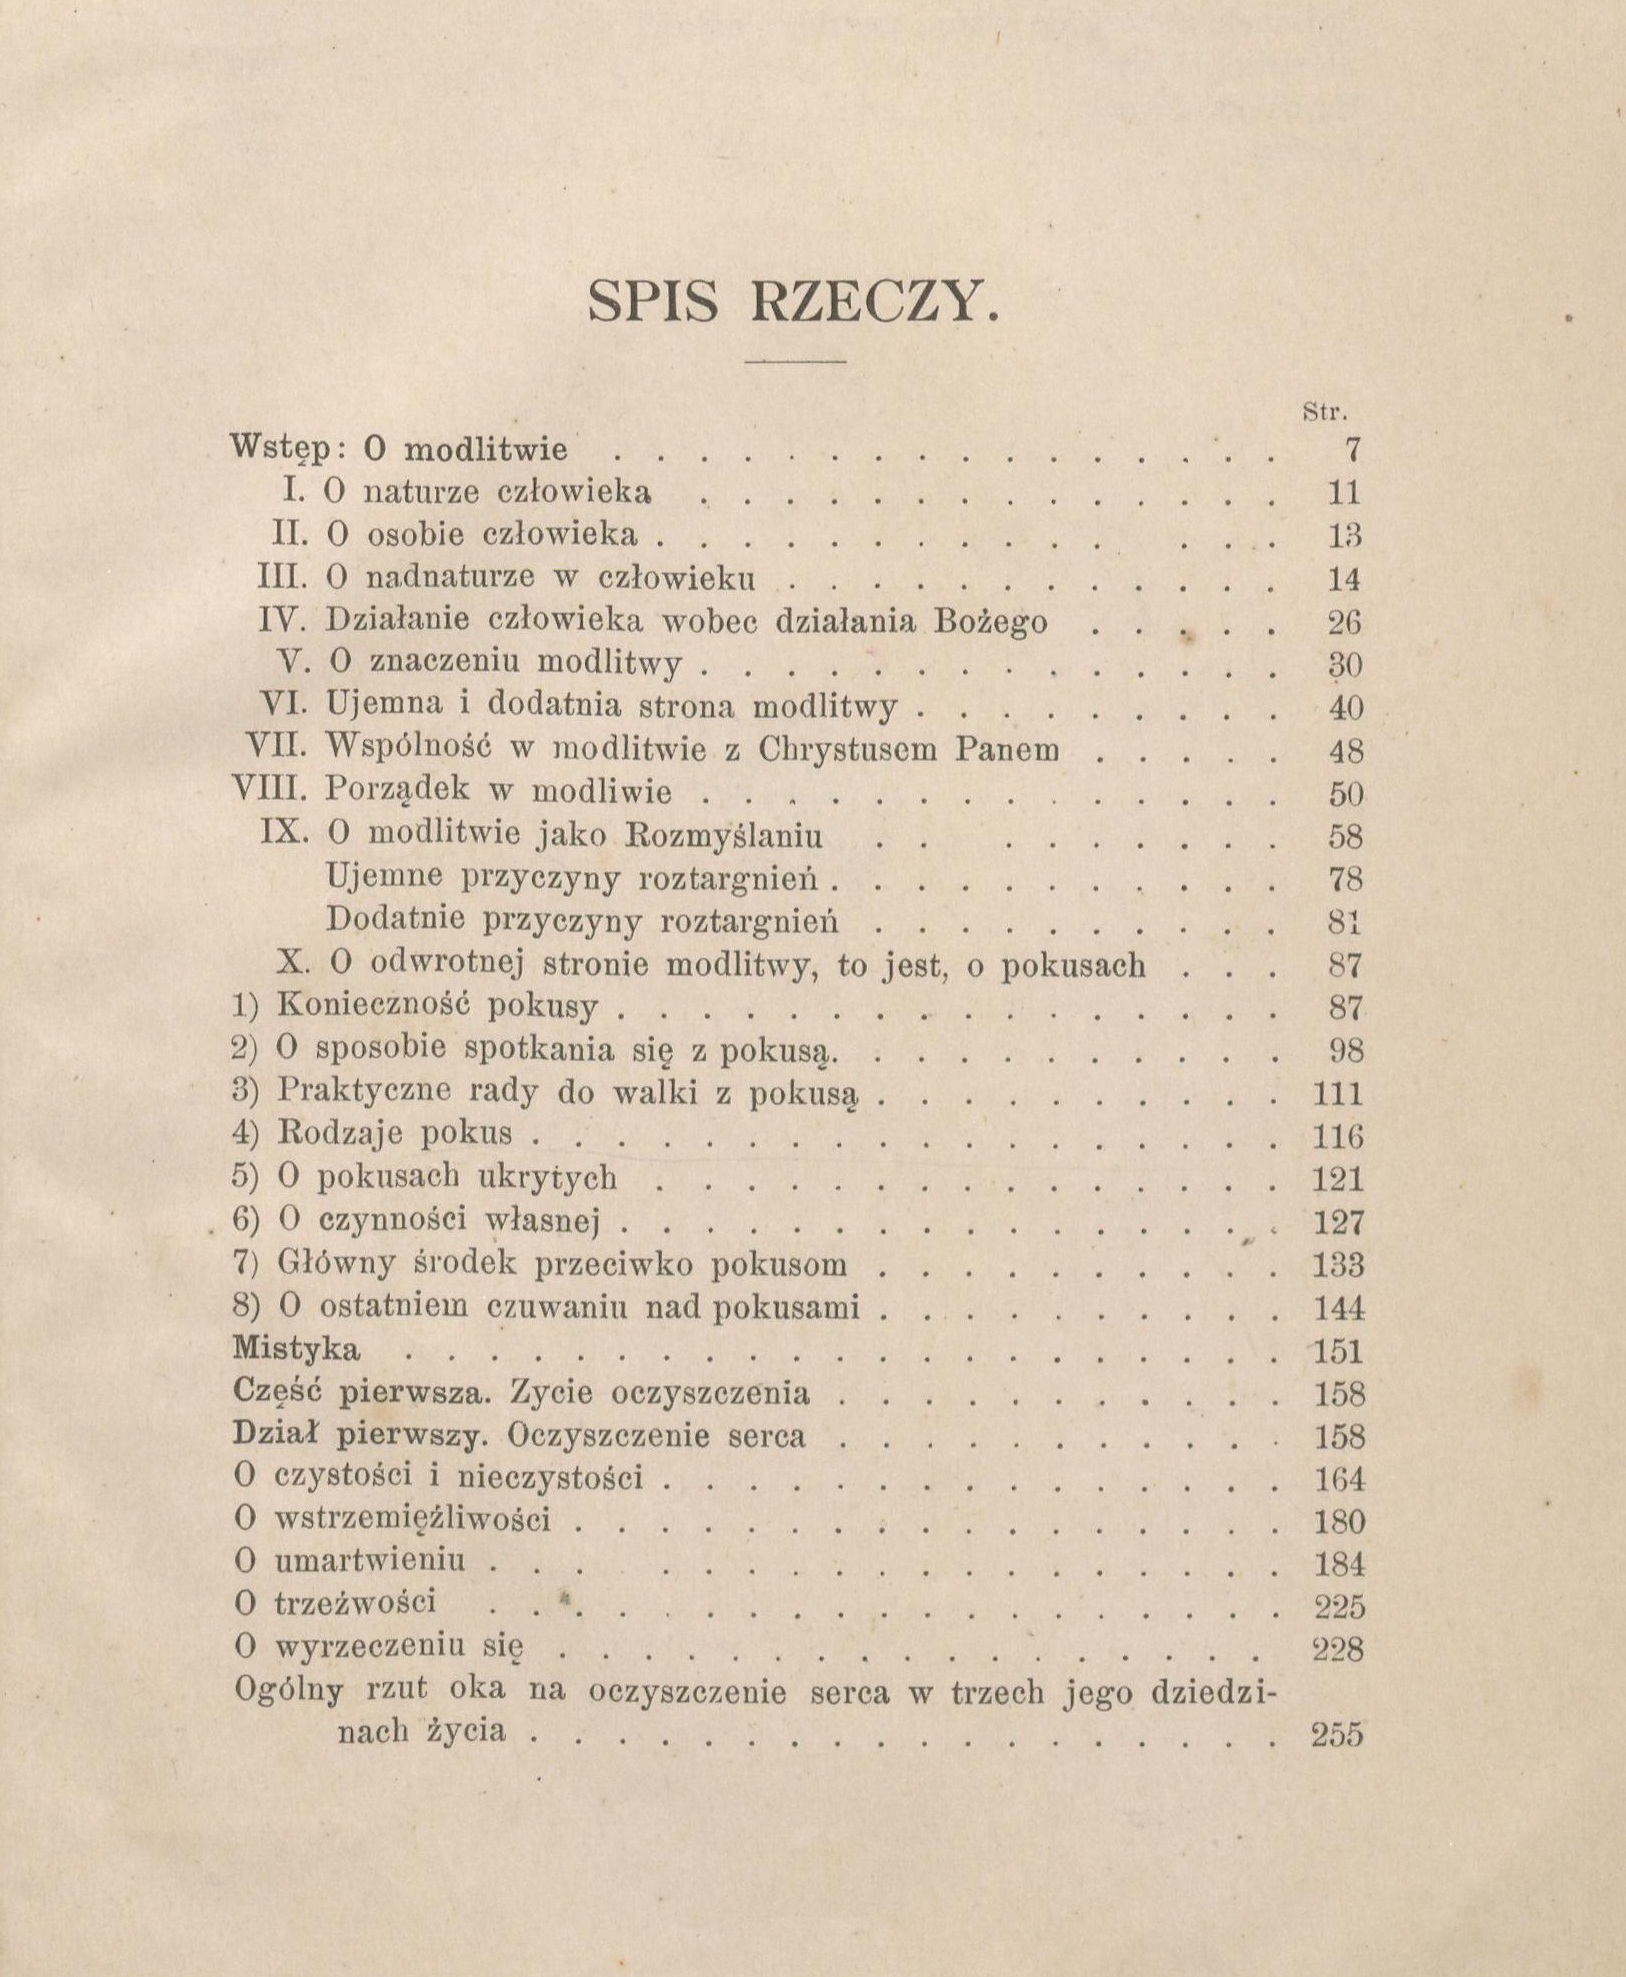 Mistyka. Uoona podug Nauk konferencyjnych X. Piotra Semenenki C. R., W Krakowie 1896.